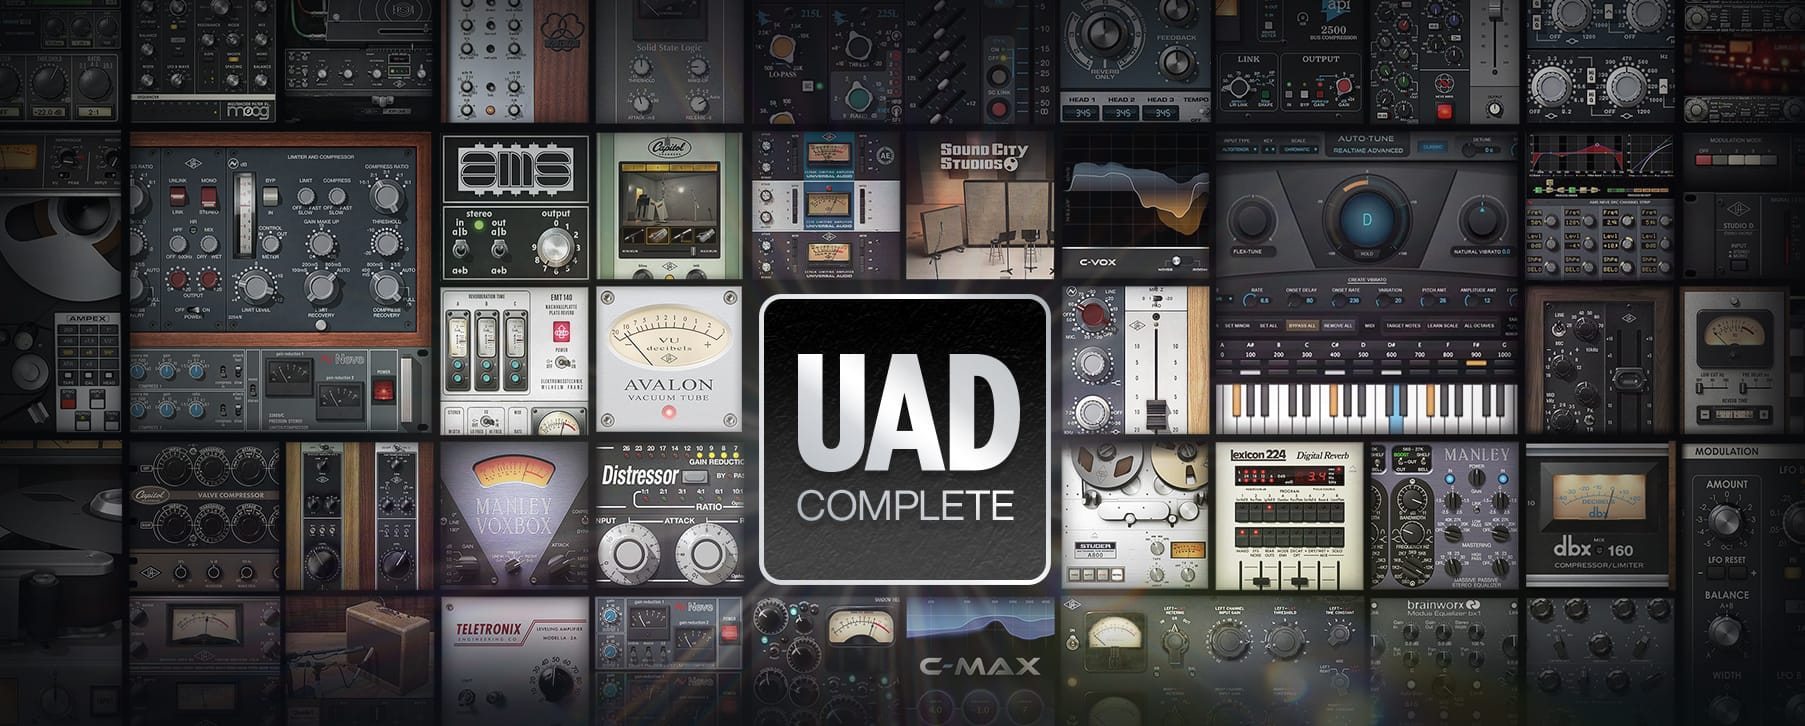 UAD Complete 2